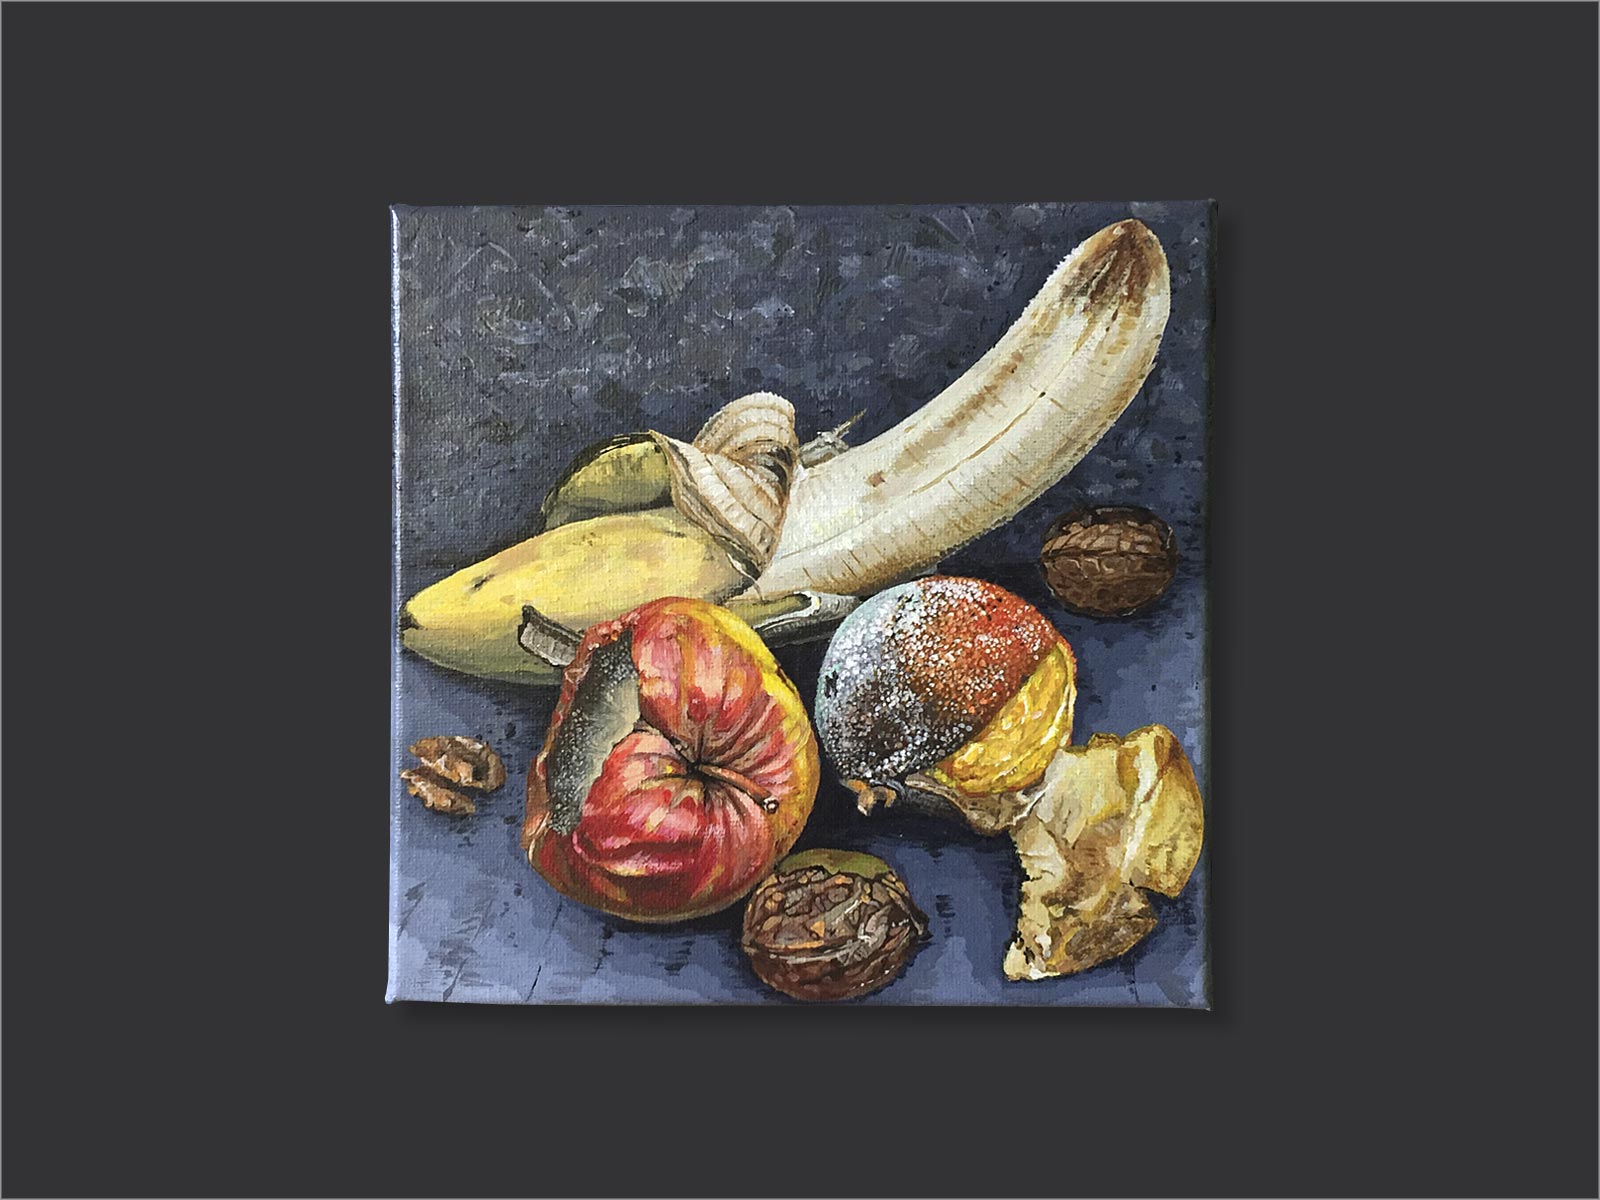 compositie van een banaan, appel, sinaasappel en walnoten waarbij het fruit beschimmeld en aangetast is